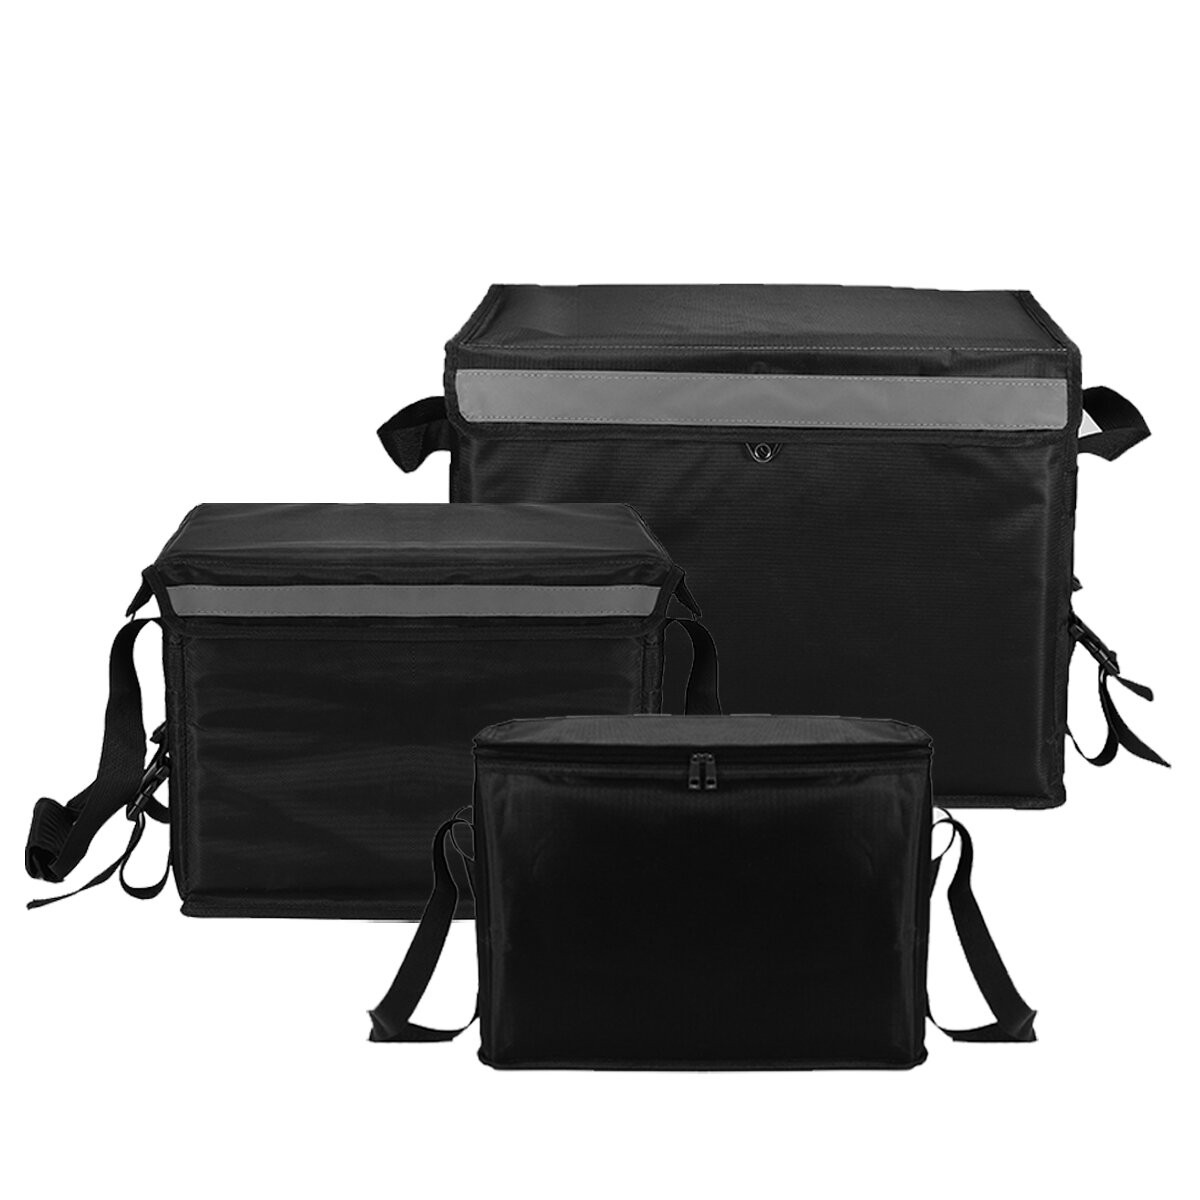 Θερμομονωτική τσάντα παράδοσης τροφίμων 23/30/62L, ζεστή / κρύα τσάντα για κάμπινγκ, πικνίκ, μπάρμπεκιου με εσωτερική βάση.